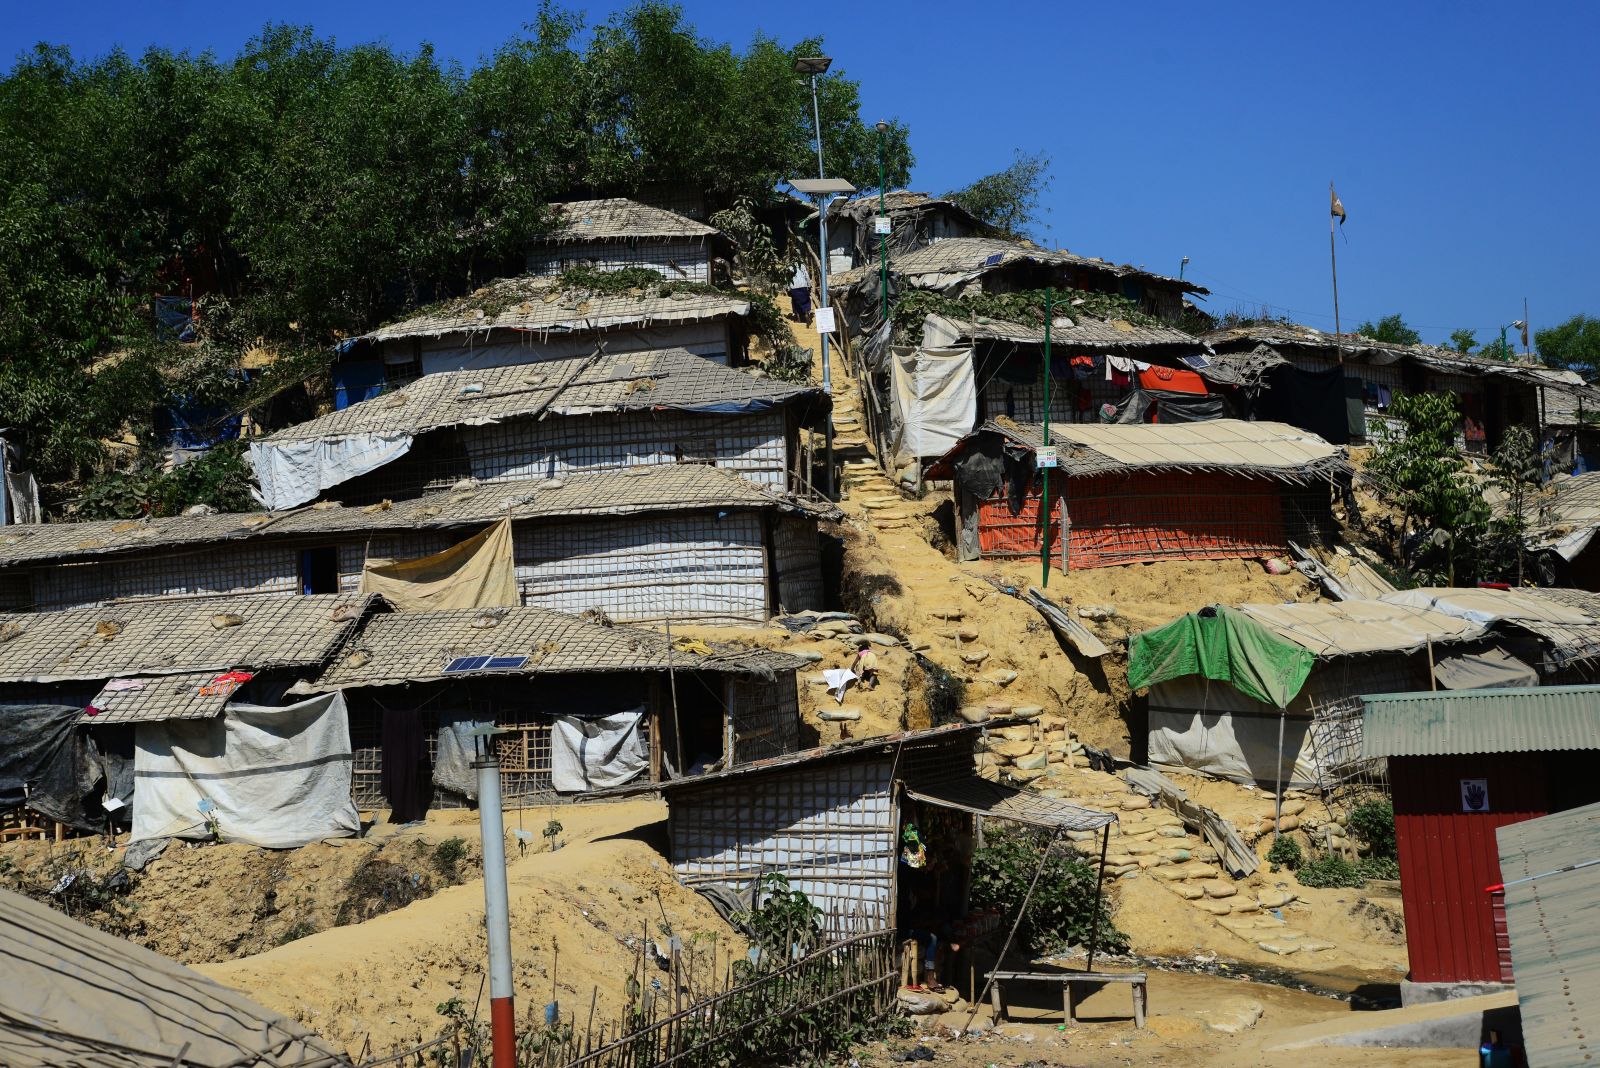 Balukhali Refugee Camp in south-eastern Bangladesh in February 2019.